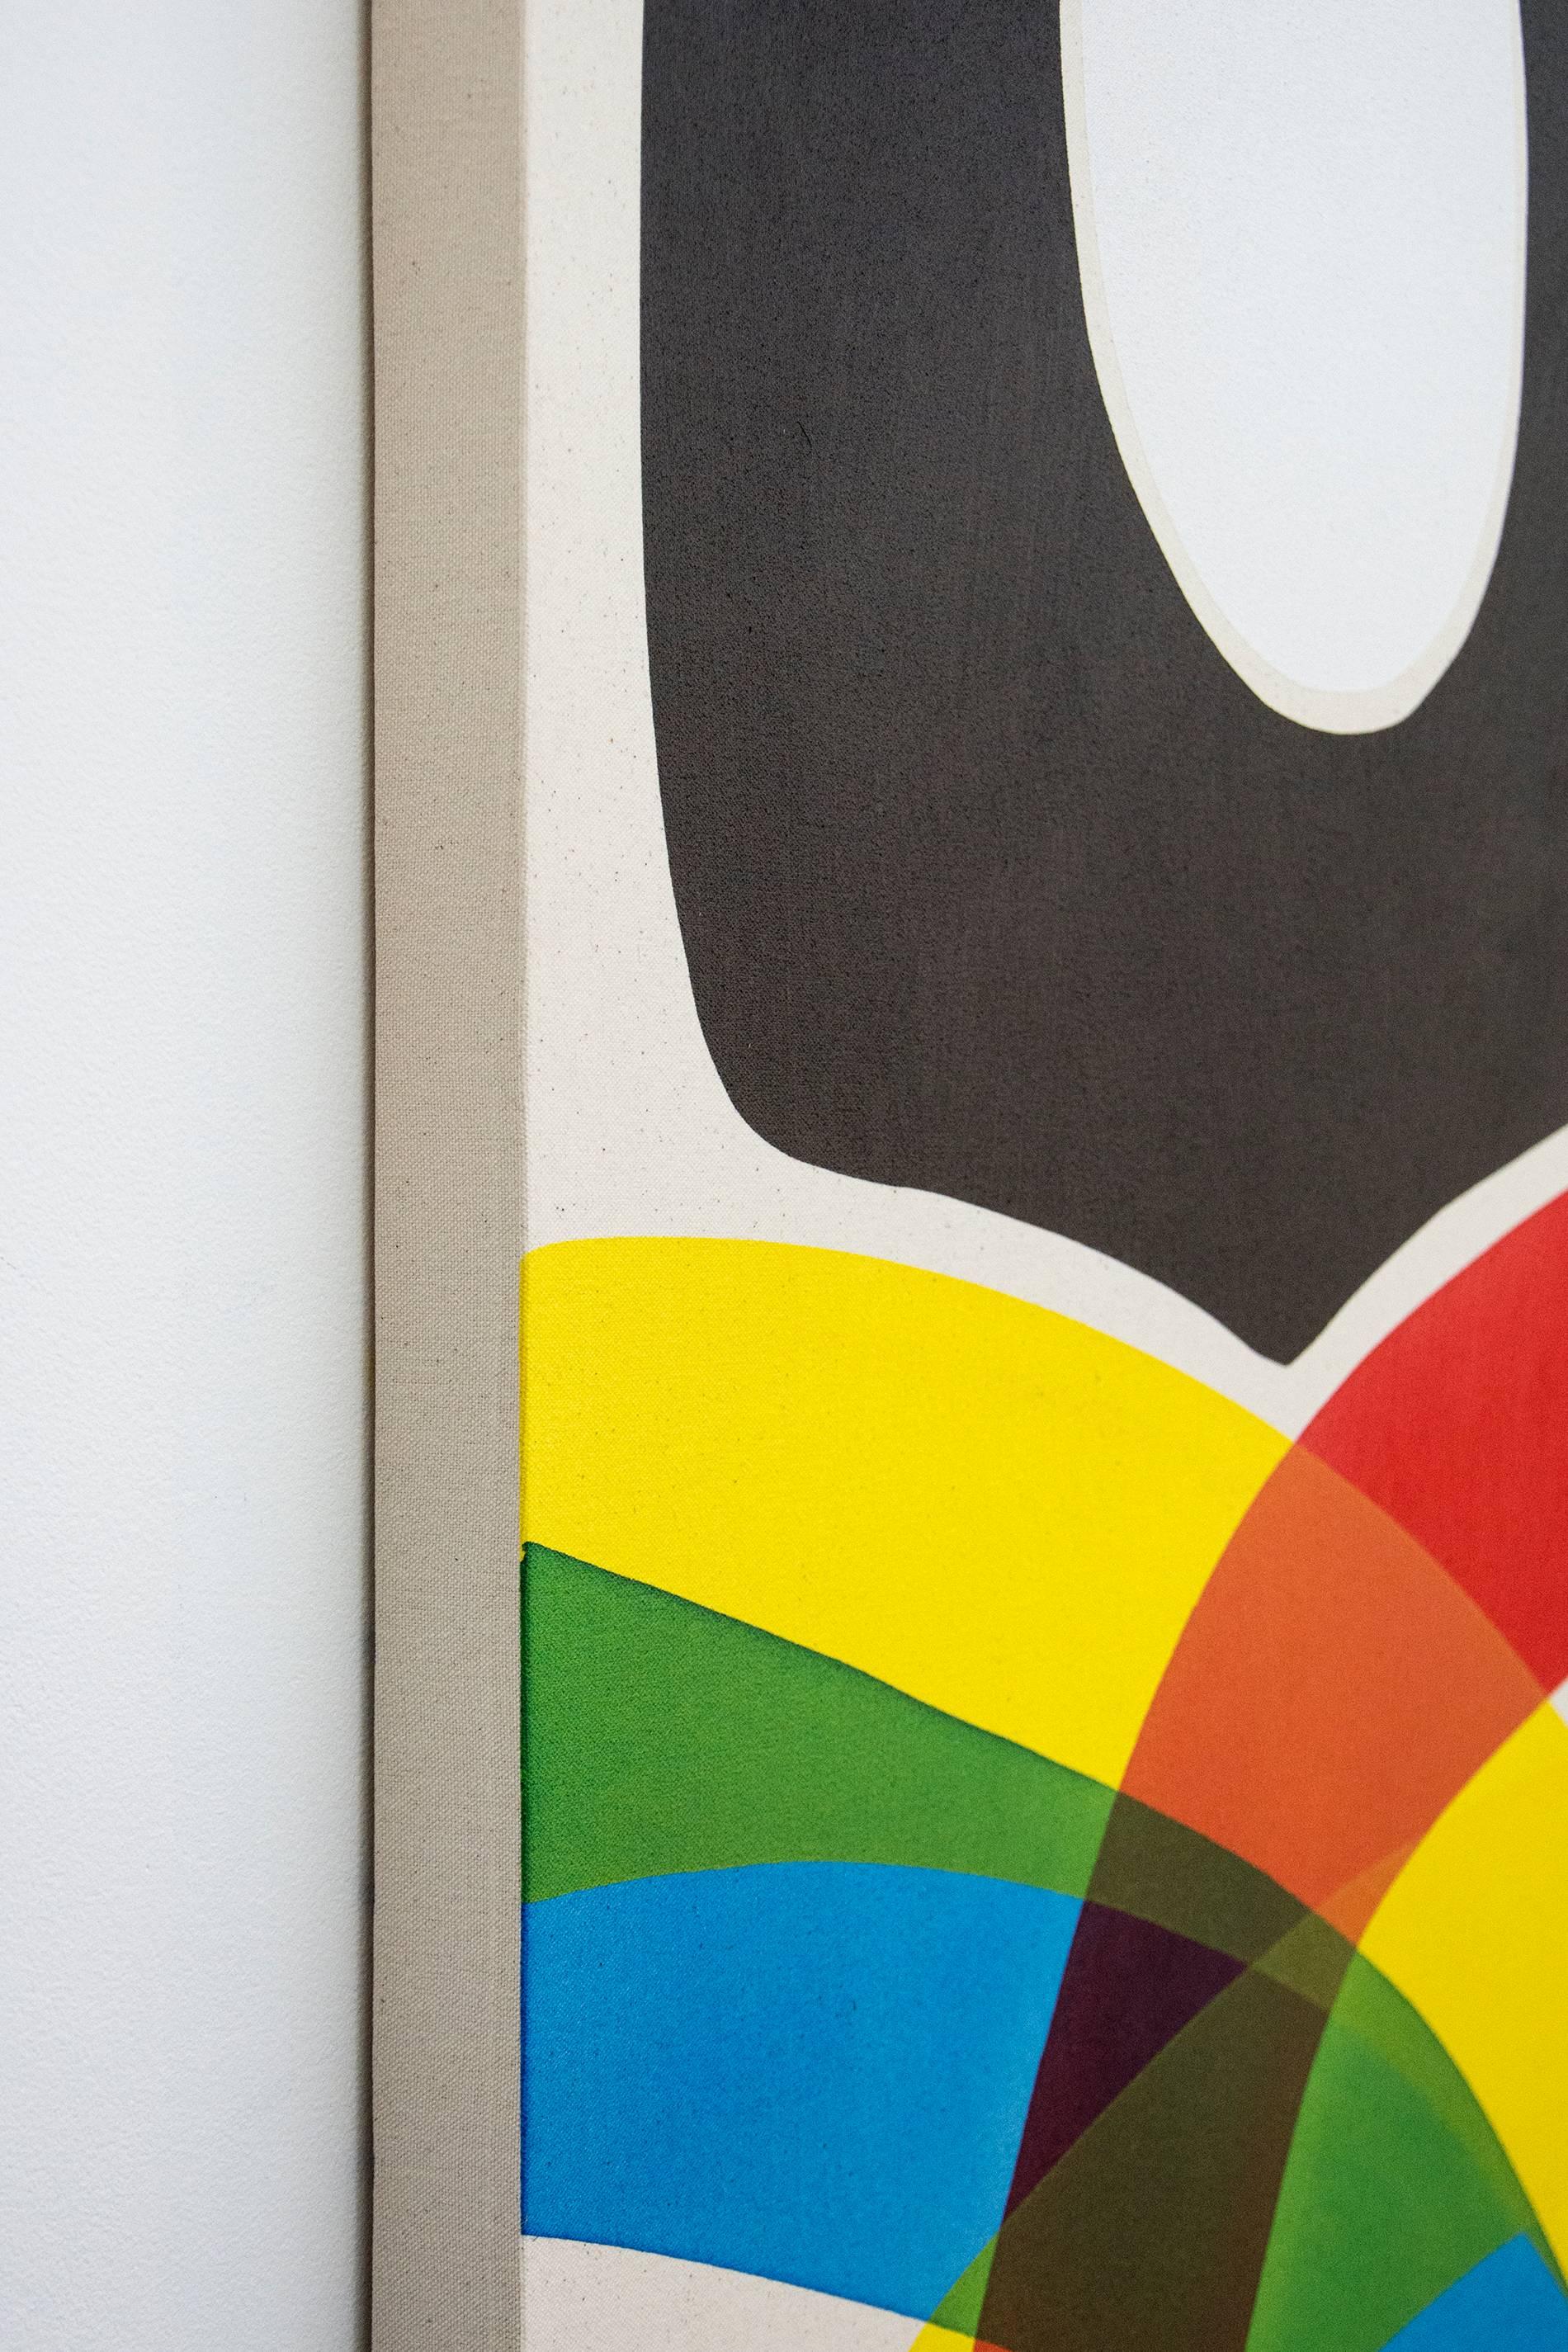 Aron Hill aime jouer avec des couleurs vives et des formes simples. Cette composition abstraite de l'artiste de Calgary présente un ovale blanc entouré de noir au-dessus d'un arc-en-ciel de bandes colorées de rouge, jaune et bleu qui deviennent